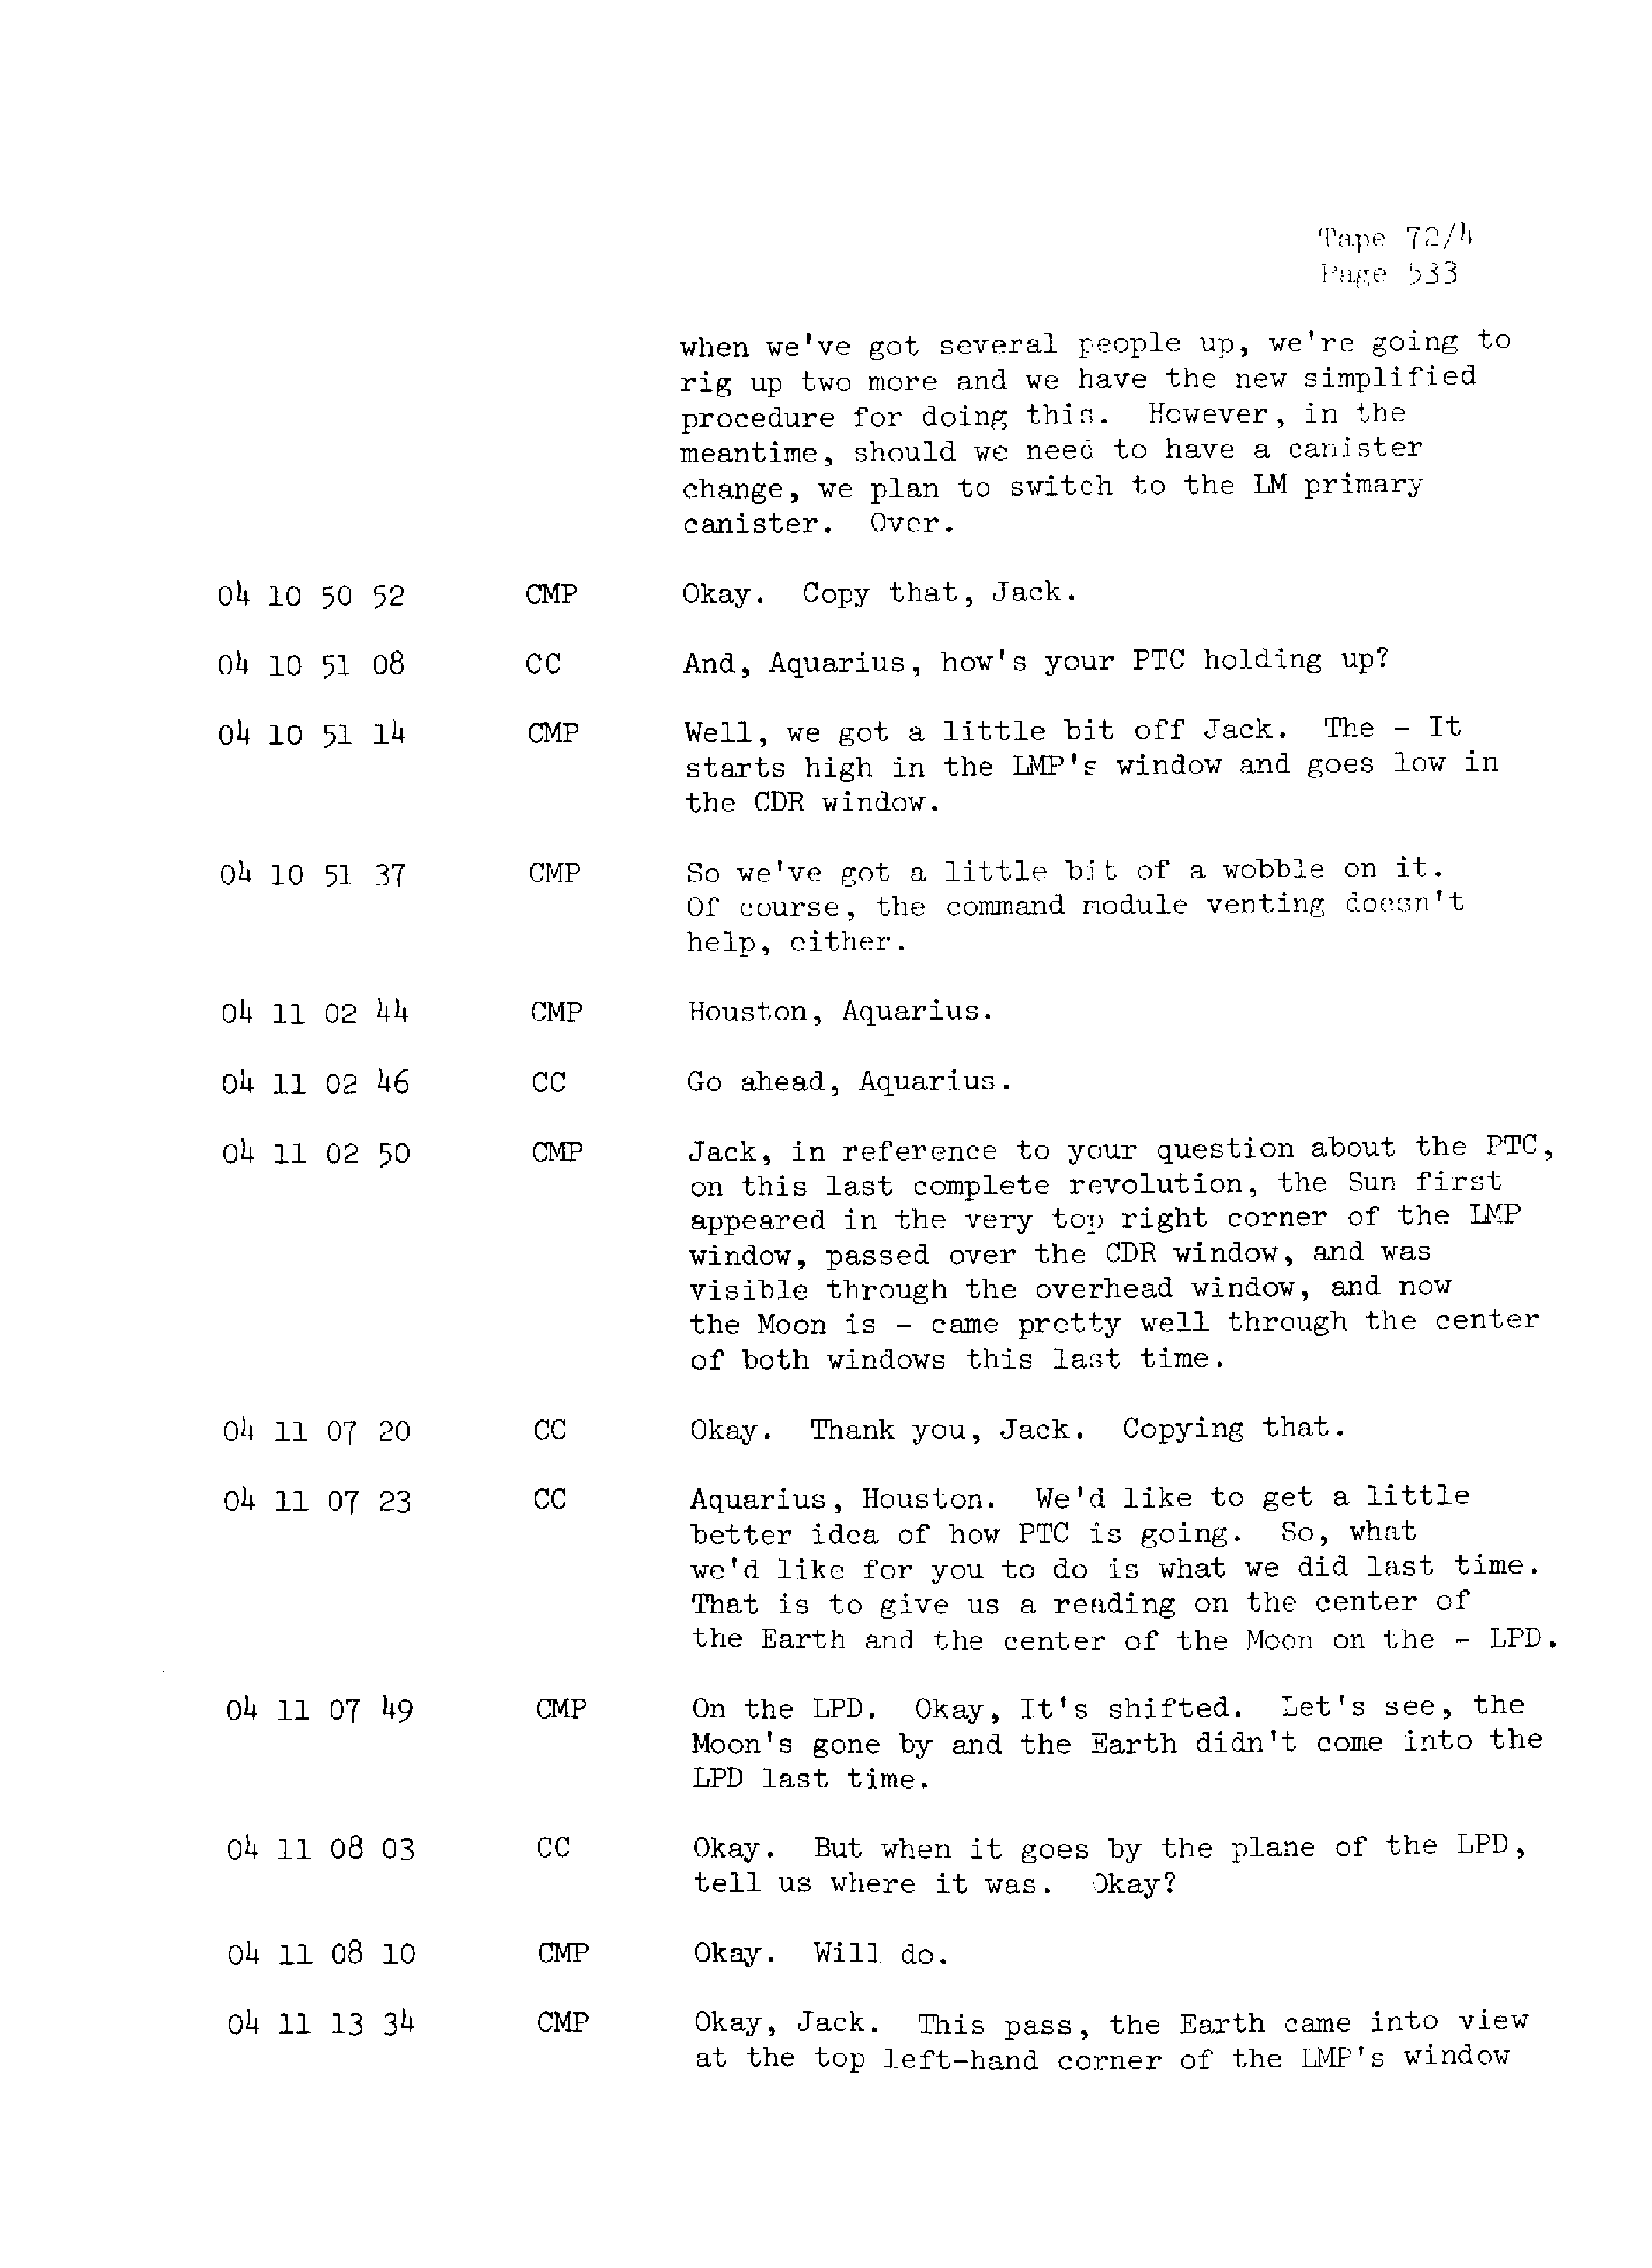 Page 540 of Apollo 13’s original transcript